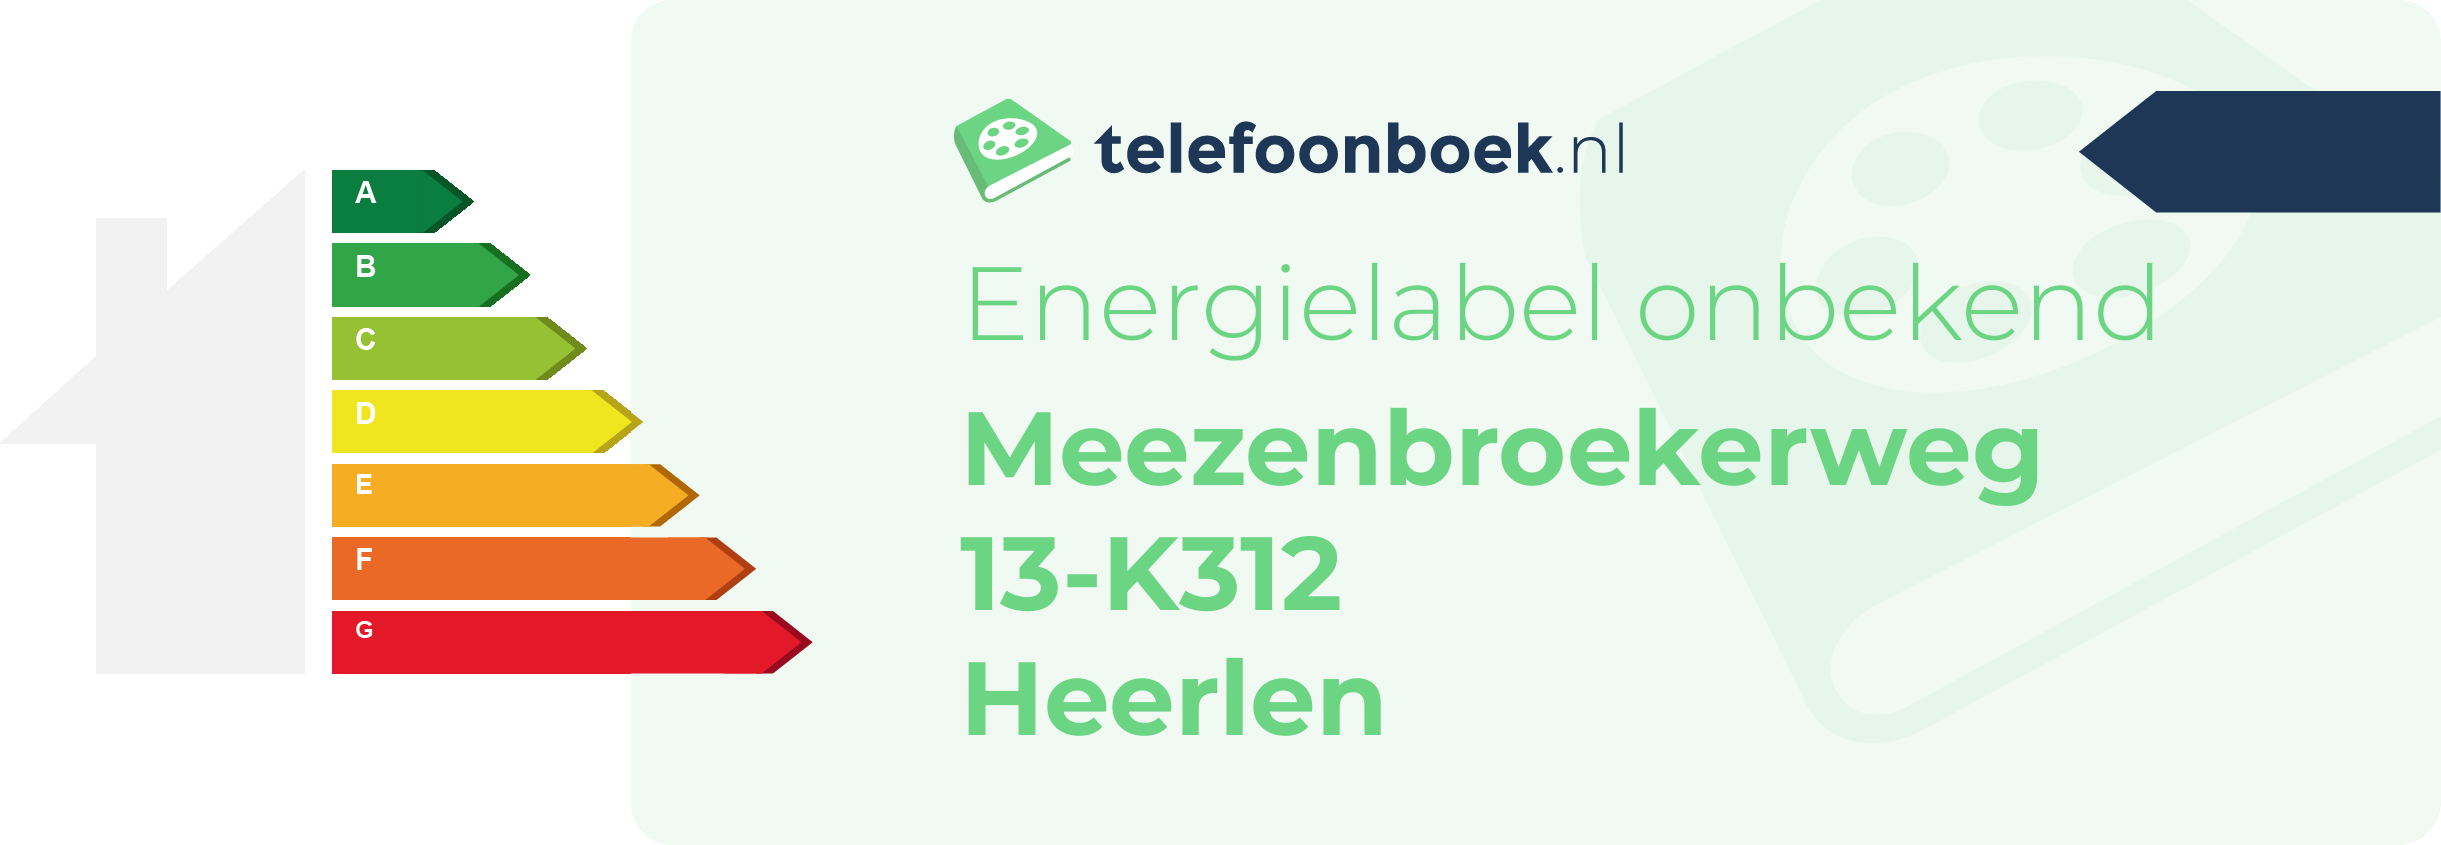 Energielabel Meezenbroekerweg 13-K312 Heerlen